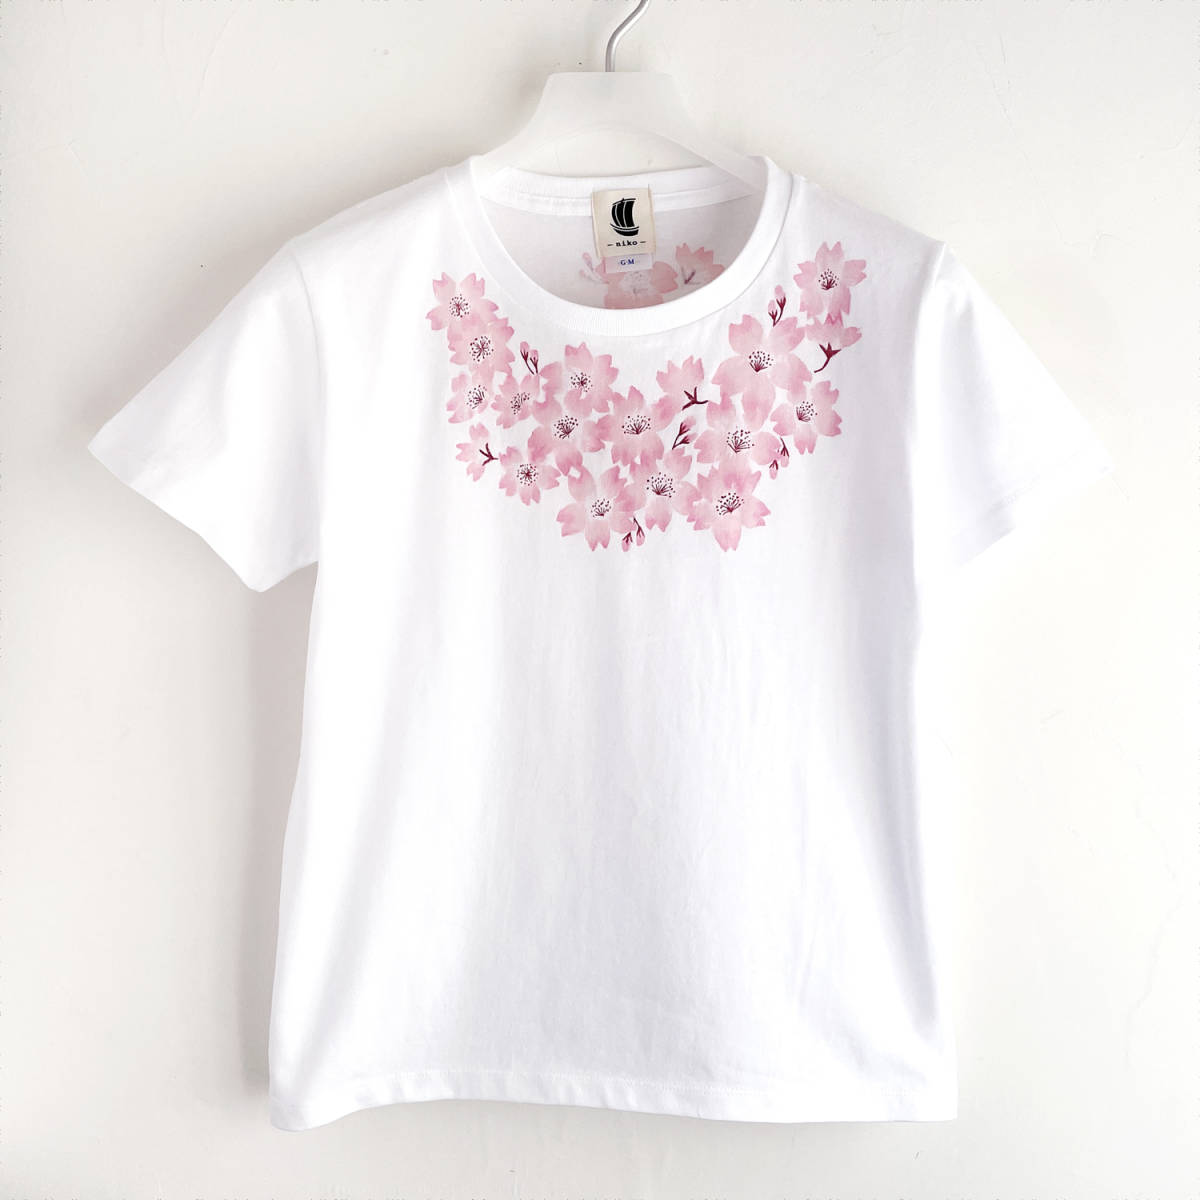 Женская футболка, Размер L, белый, футболка с корсажем и цветком вишни, футболка с ручной росписью, Размер L, круглая шея, узорчатый